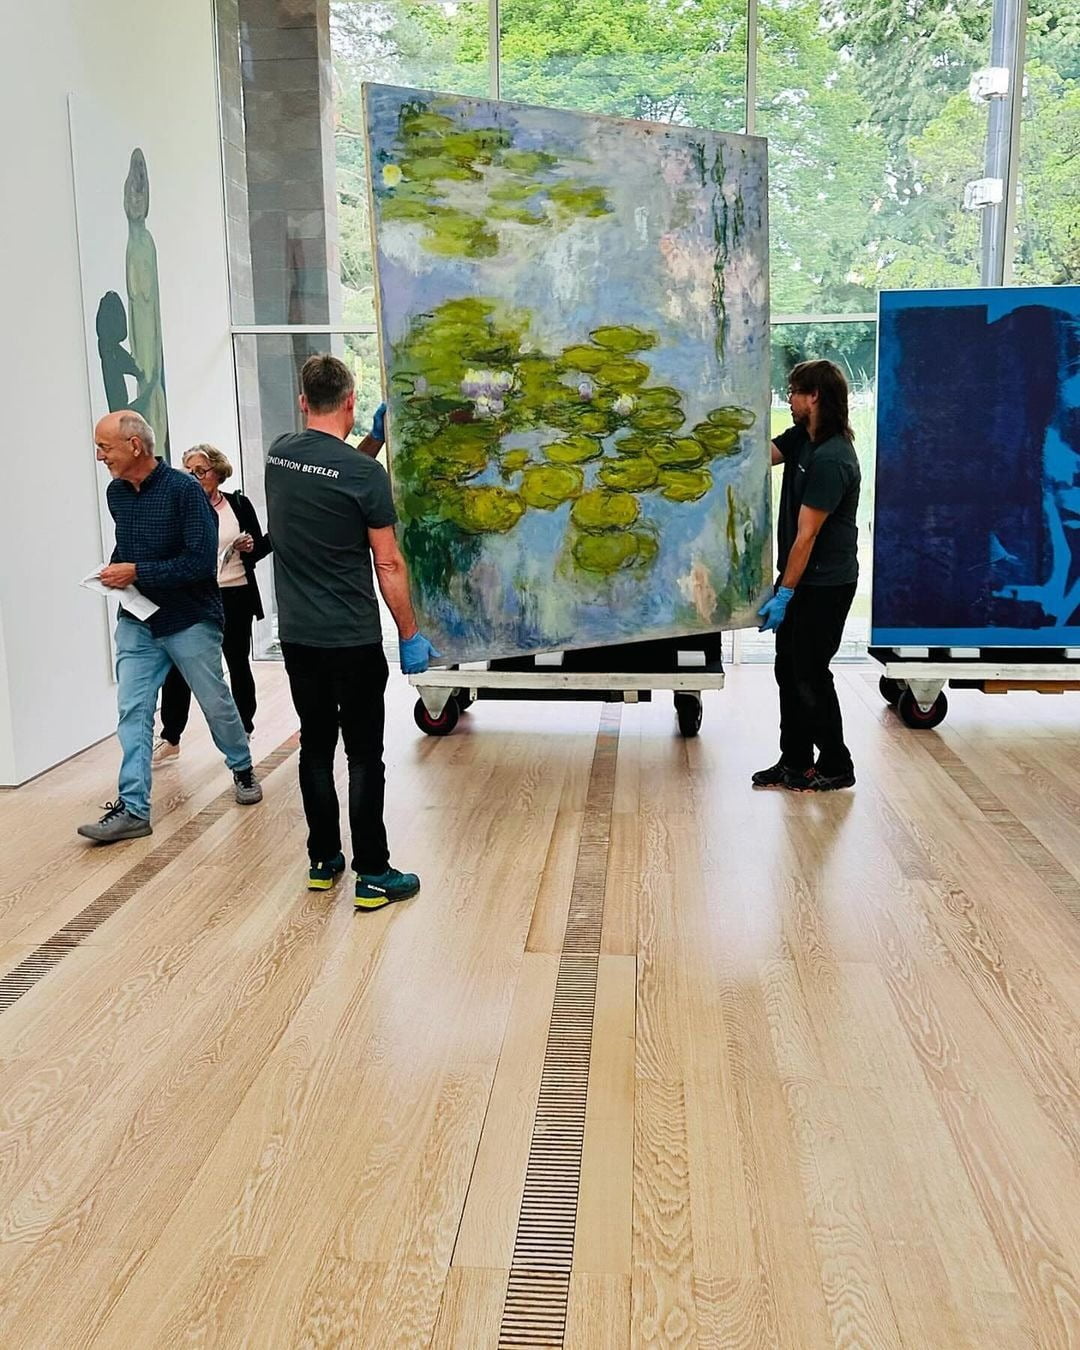 전시장이 관람객들로 붐비는 가운데, 갤러리 직원들이 모네의 그림을 옮기고 있다. 컬렉션들은 전시 기간 동안에도 시도 때도 없이 위치를 여러 번 바꾼다. (c)Beyeler Foundation 